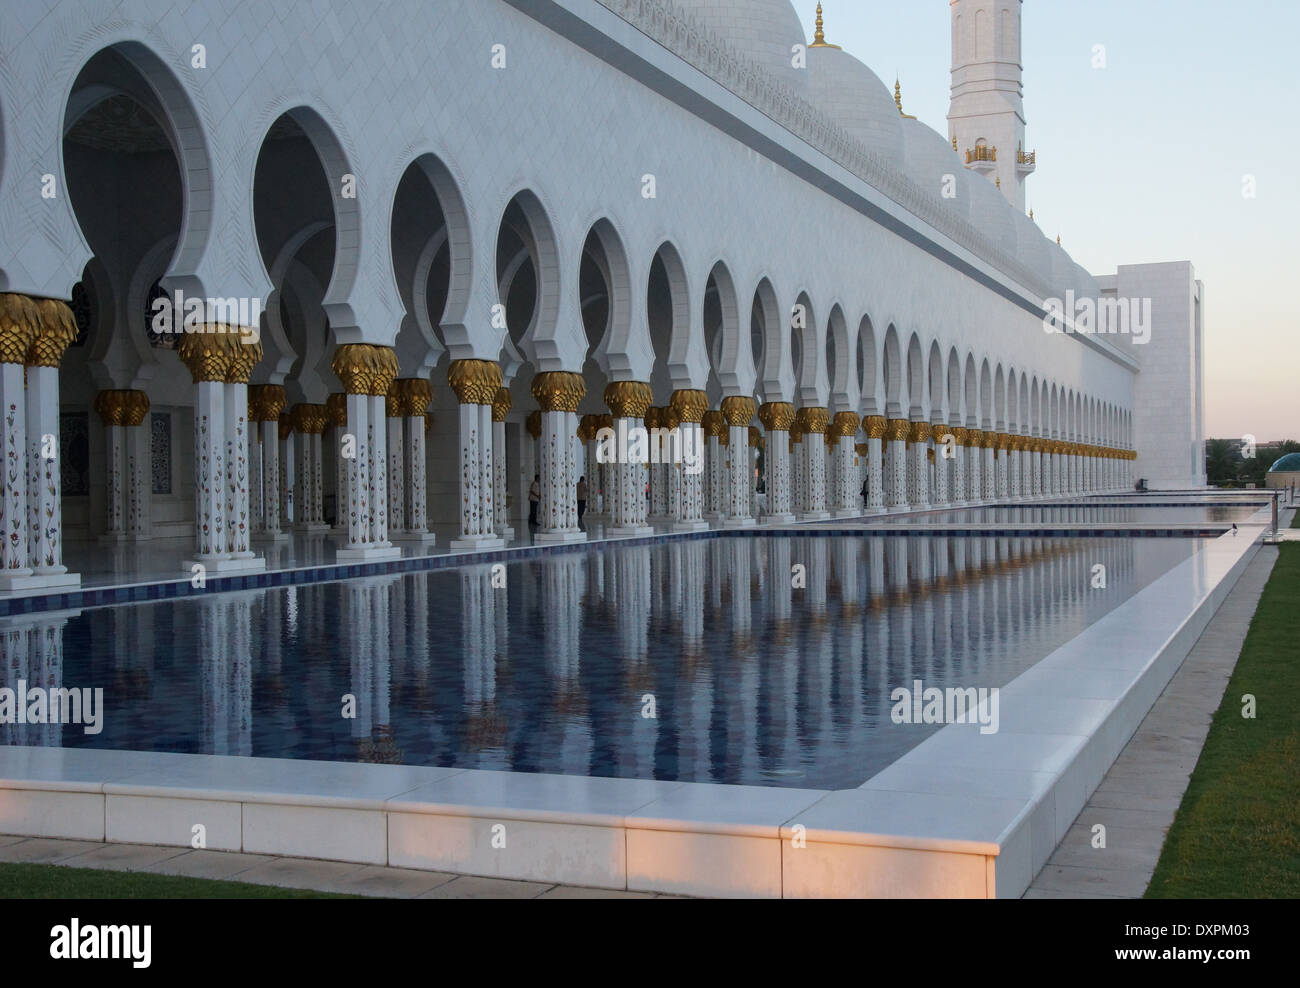 Piscina riflettente al Sheikh Zayed Grande Moschea di Abu Dhabi che cattura splendidamente la riflessione della moschea di colonne Foto Stock